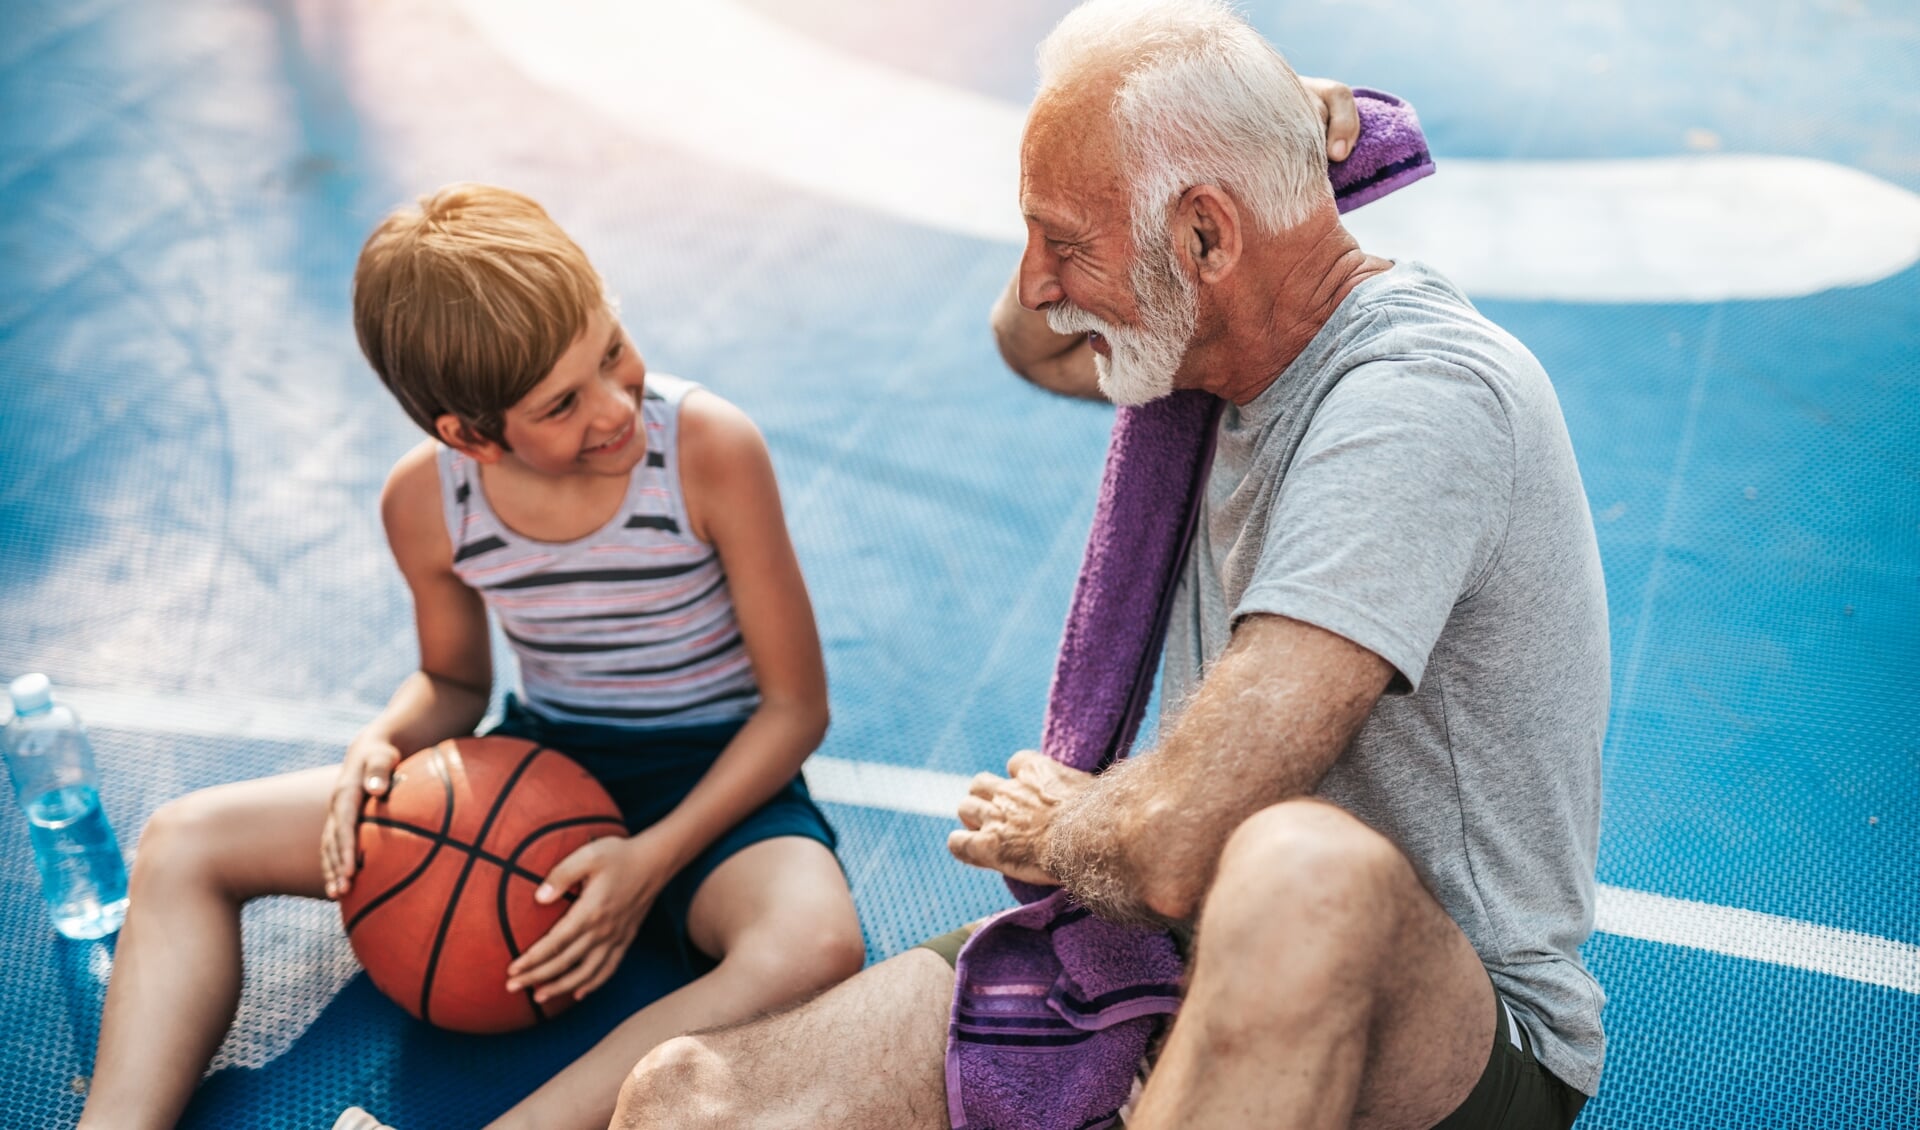 Kleinkind en grootouder kunnen prima in clubverband met elkaar sporten, alleen wordt dat niet aangeboden. Het Sportakkoord kan hier verandering in brengen.